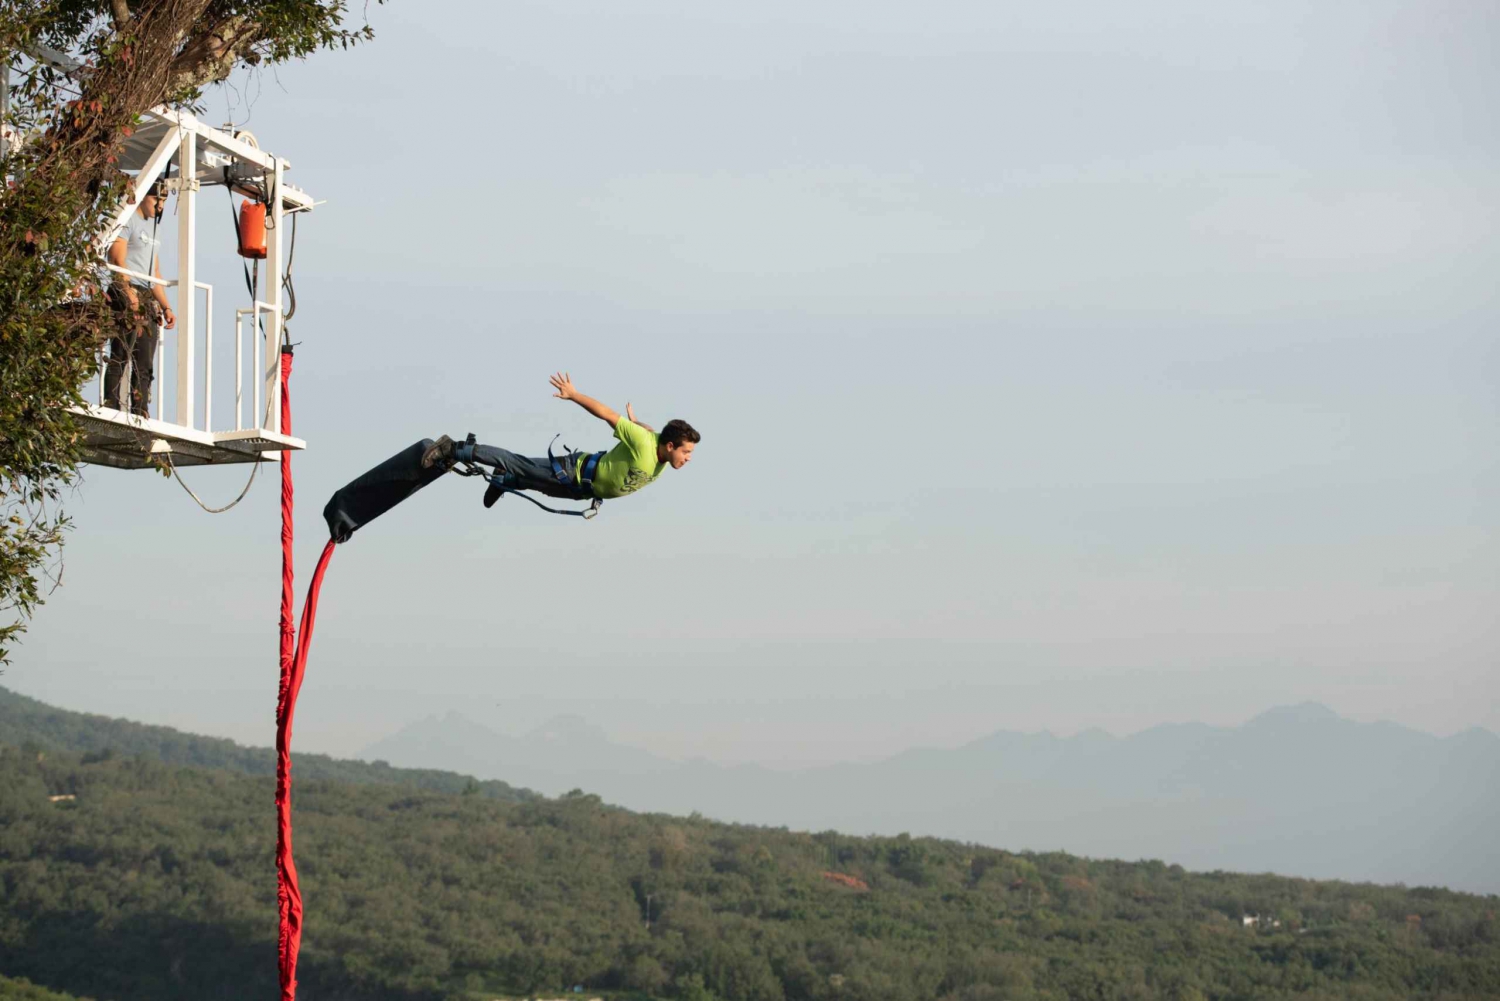 Santiago: Bungee Jumping at Cola de Caballo Park